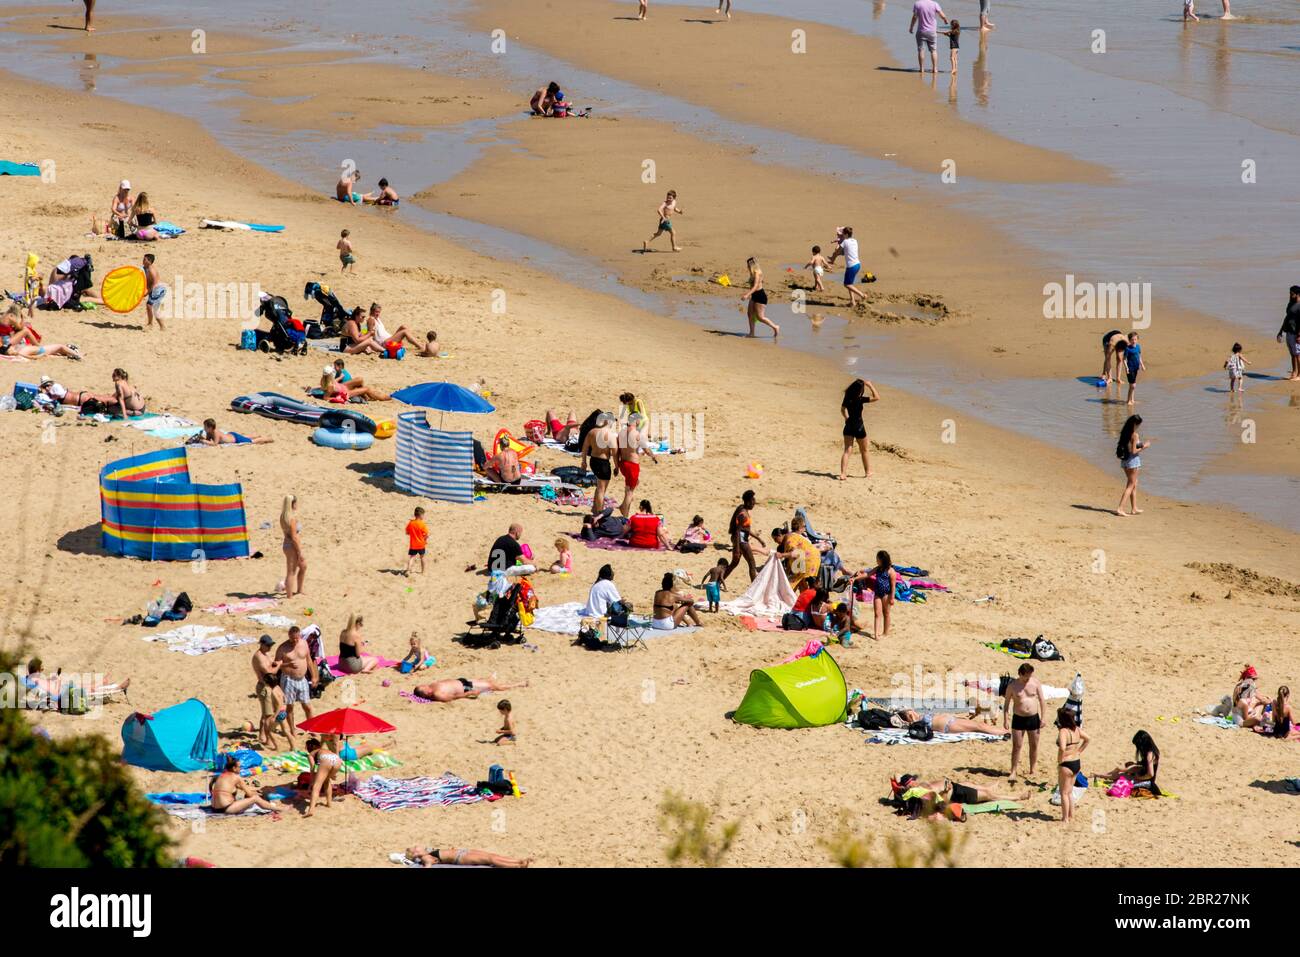 Bournemouth, Royaume-Uni, 20 mai 2020. Le jour le plus chaud de l'année amène les visiteurs à la plage, les règles de verrouillage COVID-19 étant relaxées au Royaume-Uni. Crédit John Beasley Banque D'Images